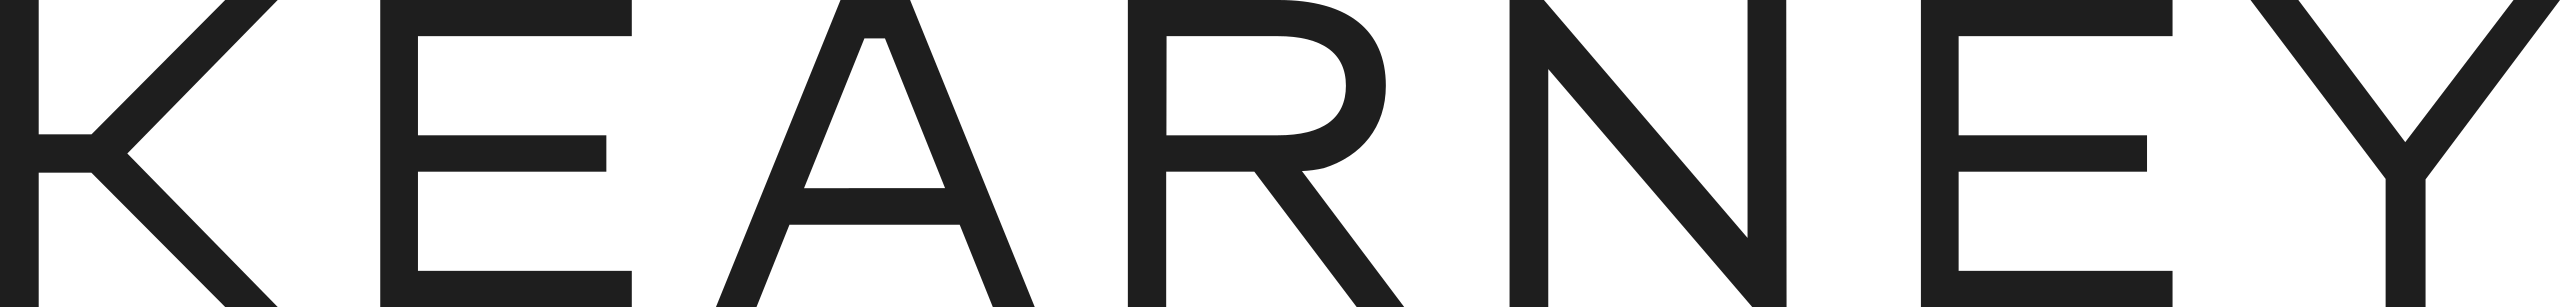 Kearney - logo